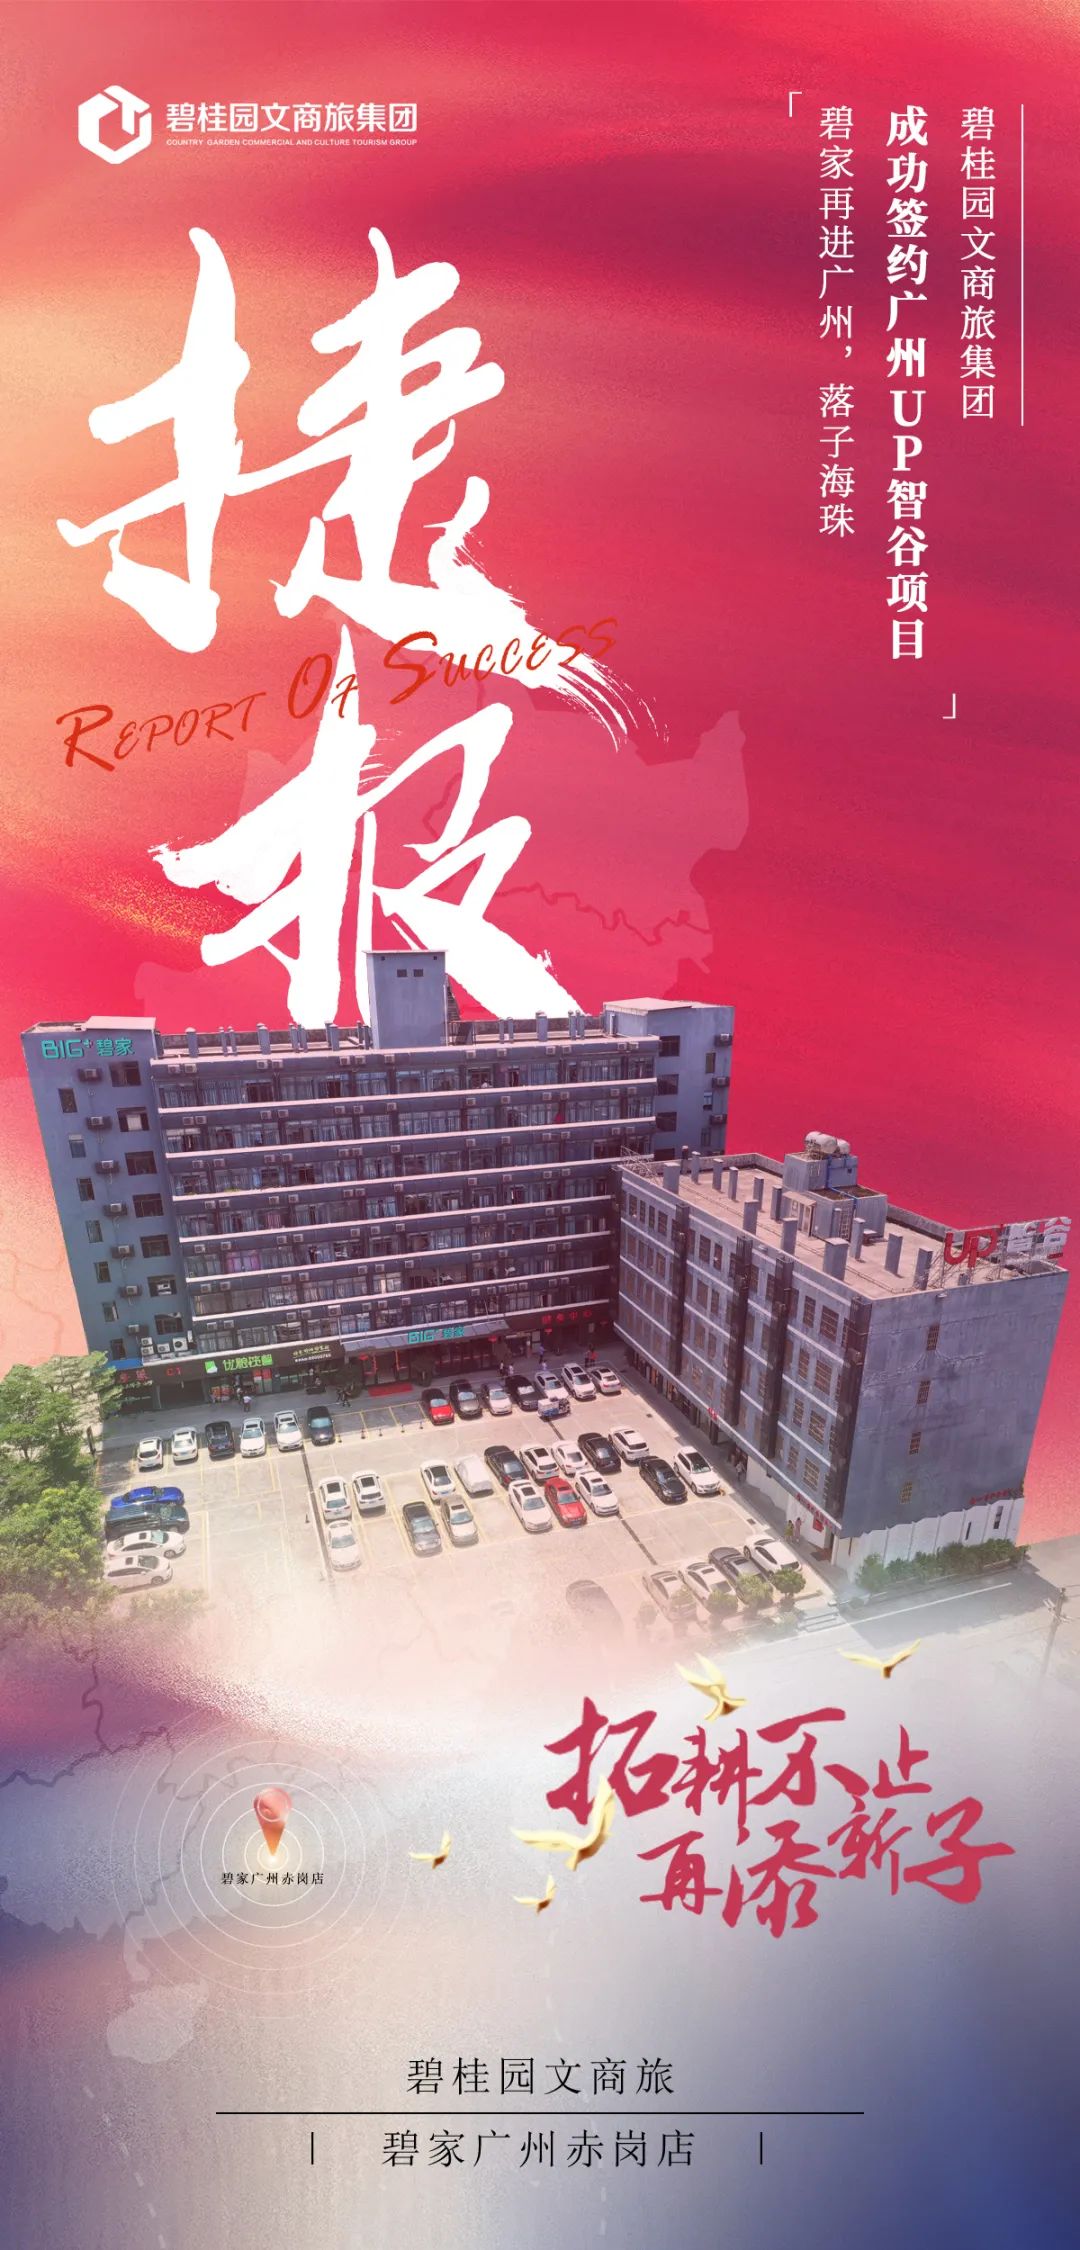 碧桂园文商旅集团成功签约广州UP智谷长租公寓项目